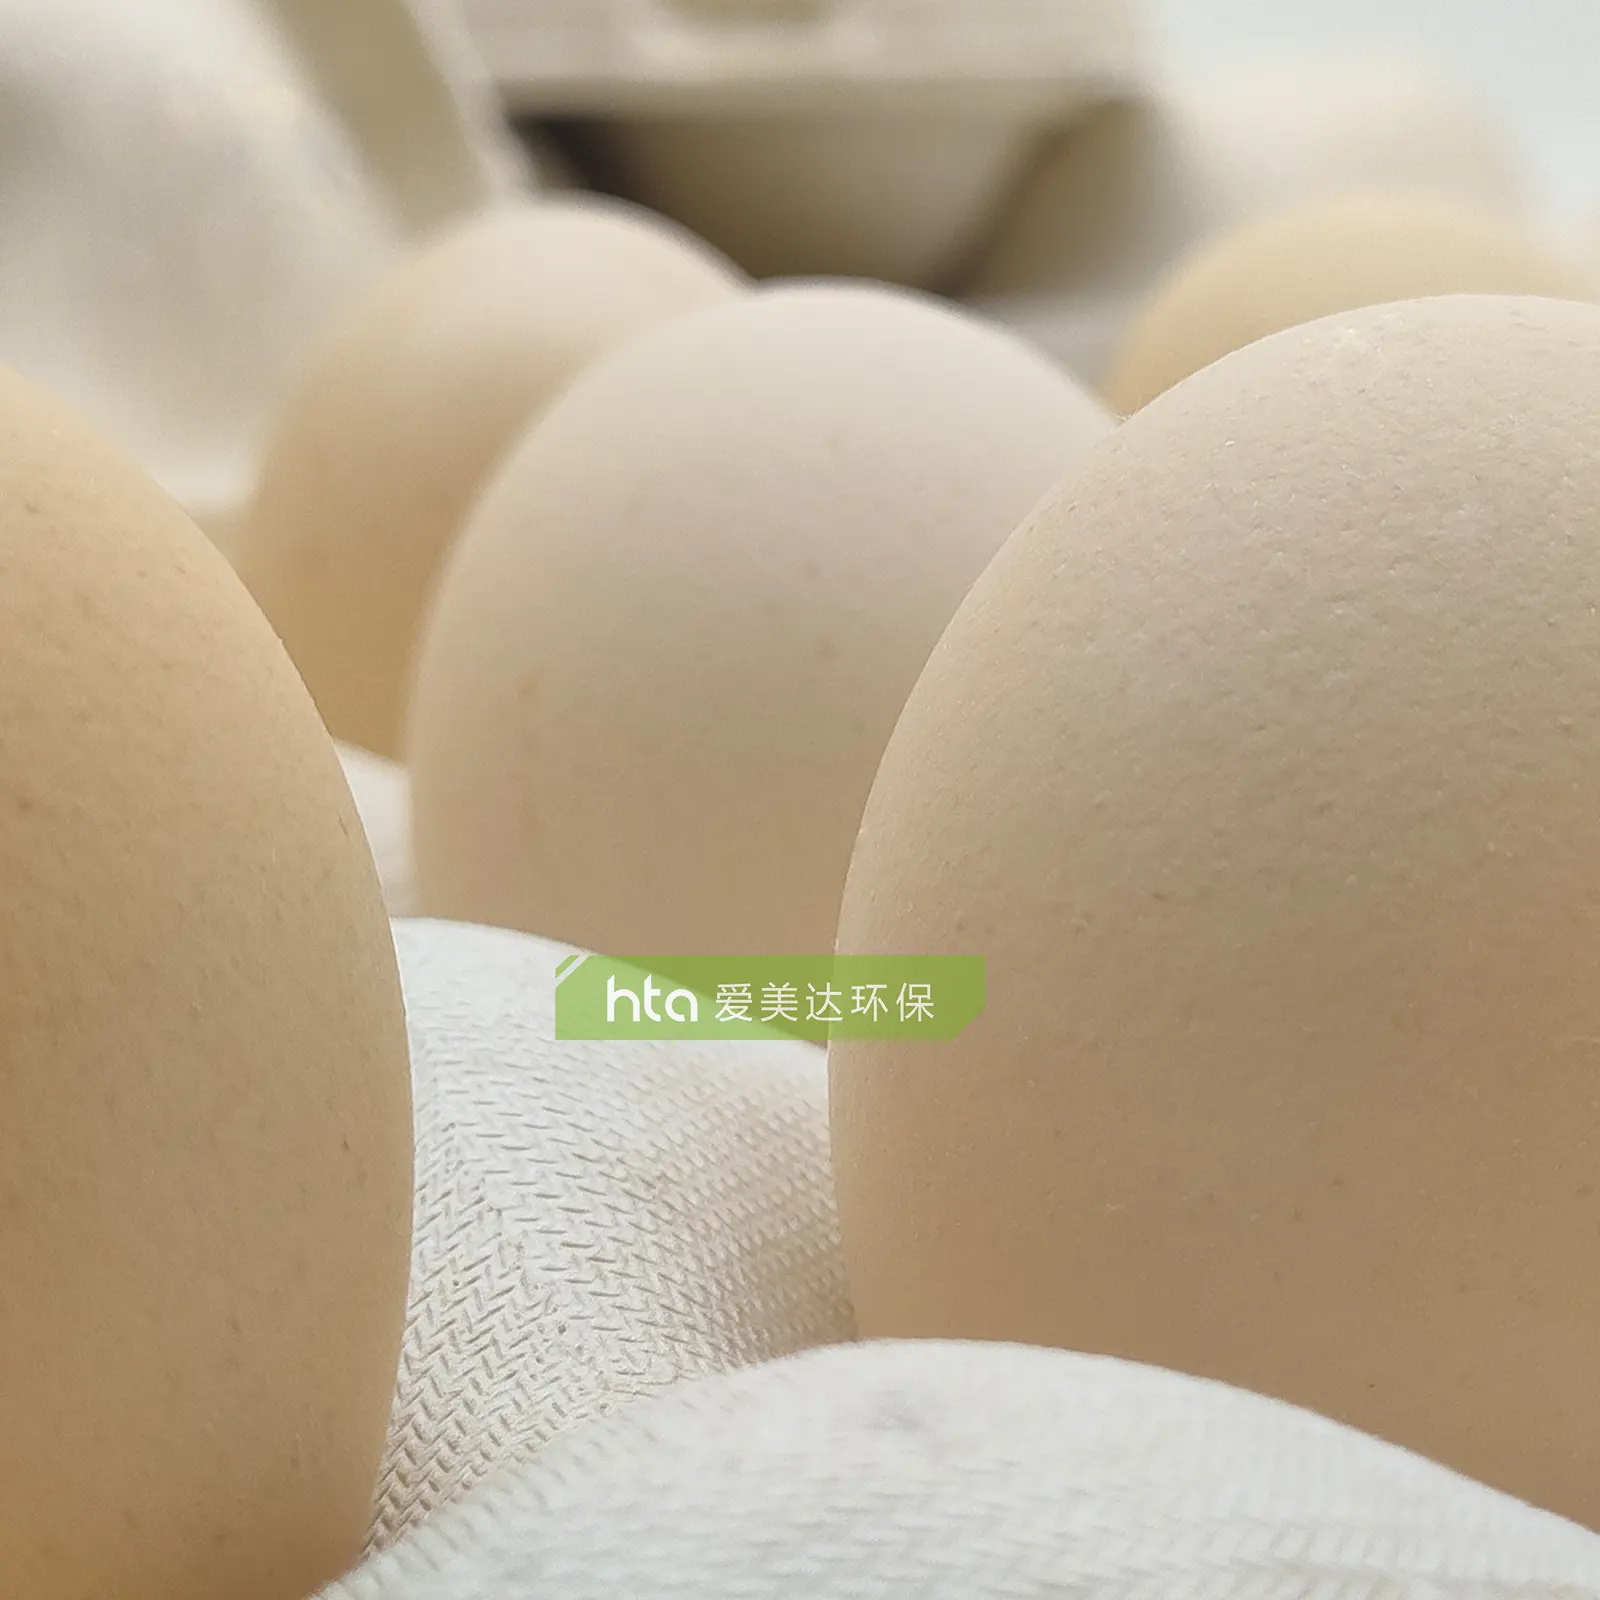 Изготовленный На Заказ биоразлагаемый лоток для яиц сахарного тростника, биоразлагаемый лоток для яиц из целлюлозы